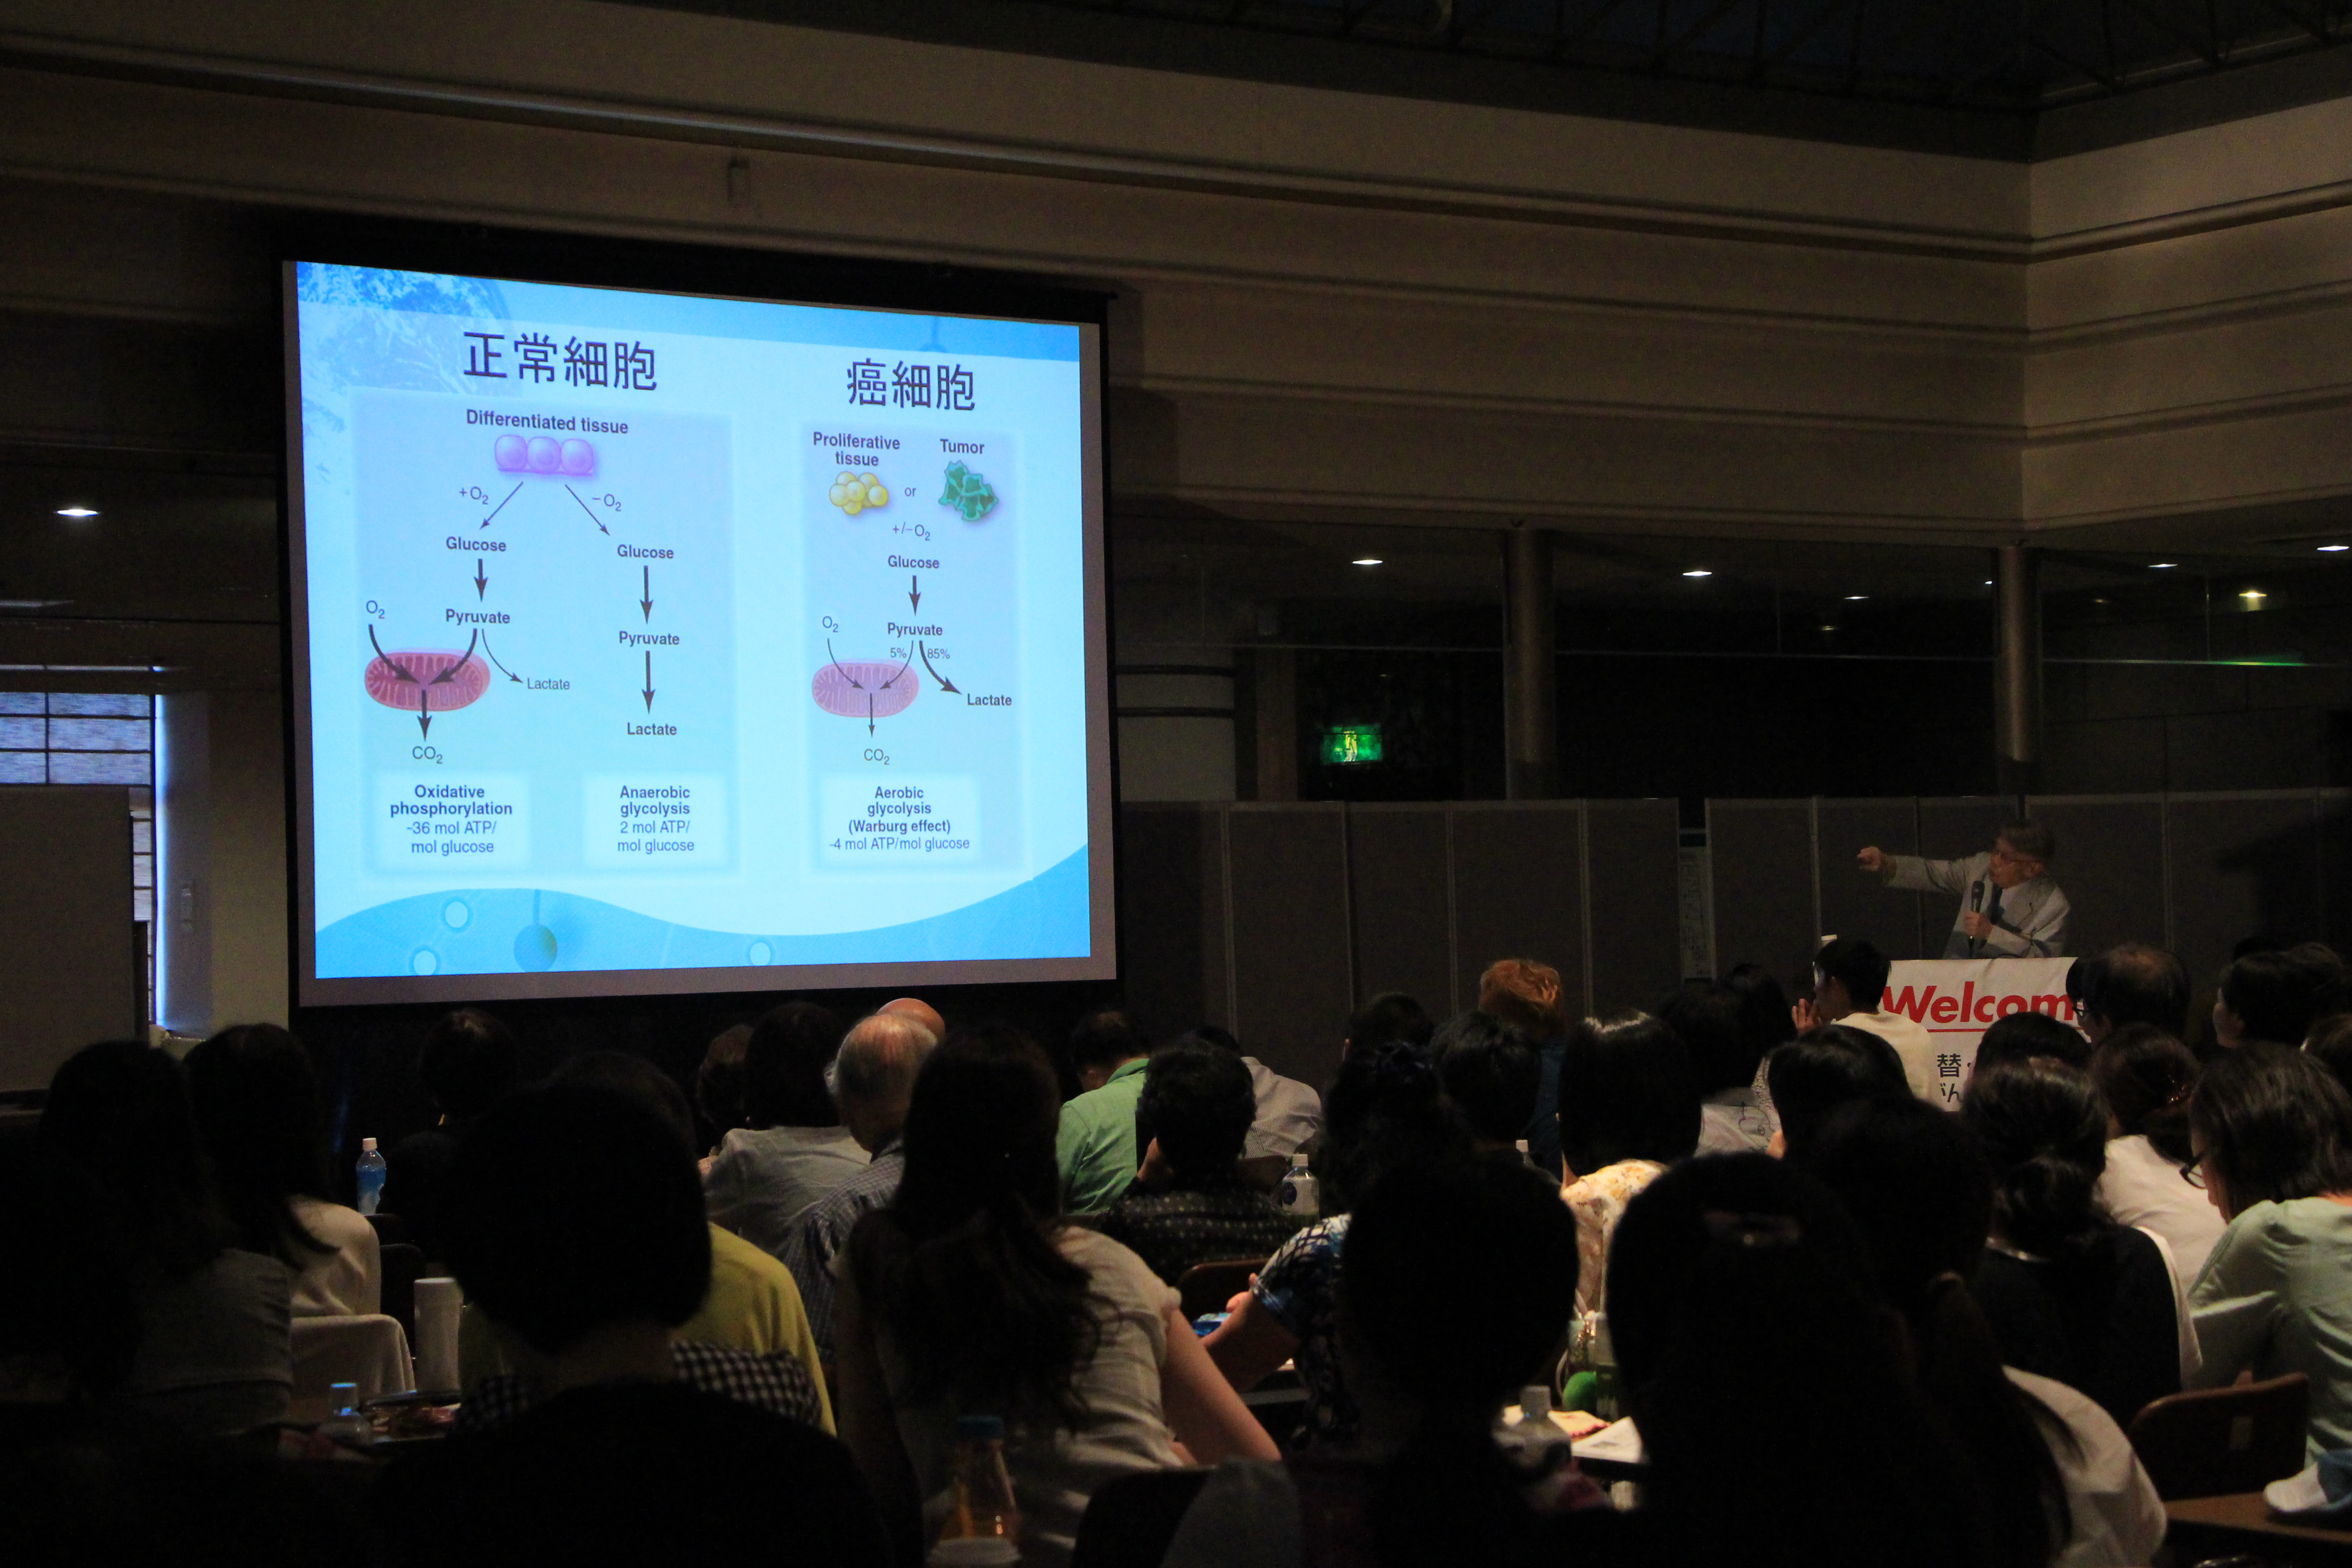 第24回 代替・統合療法 日本がんコンベンション